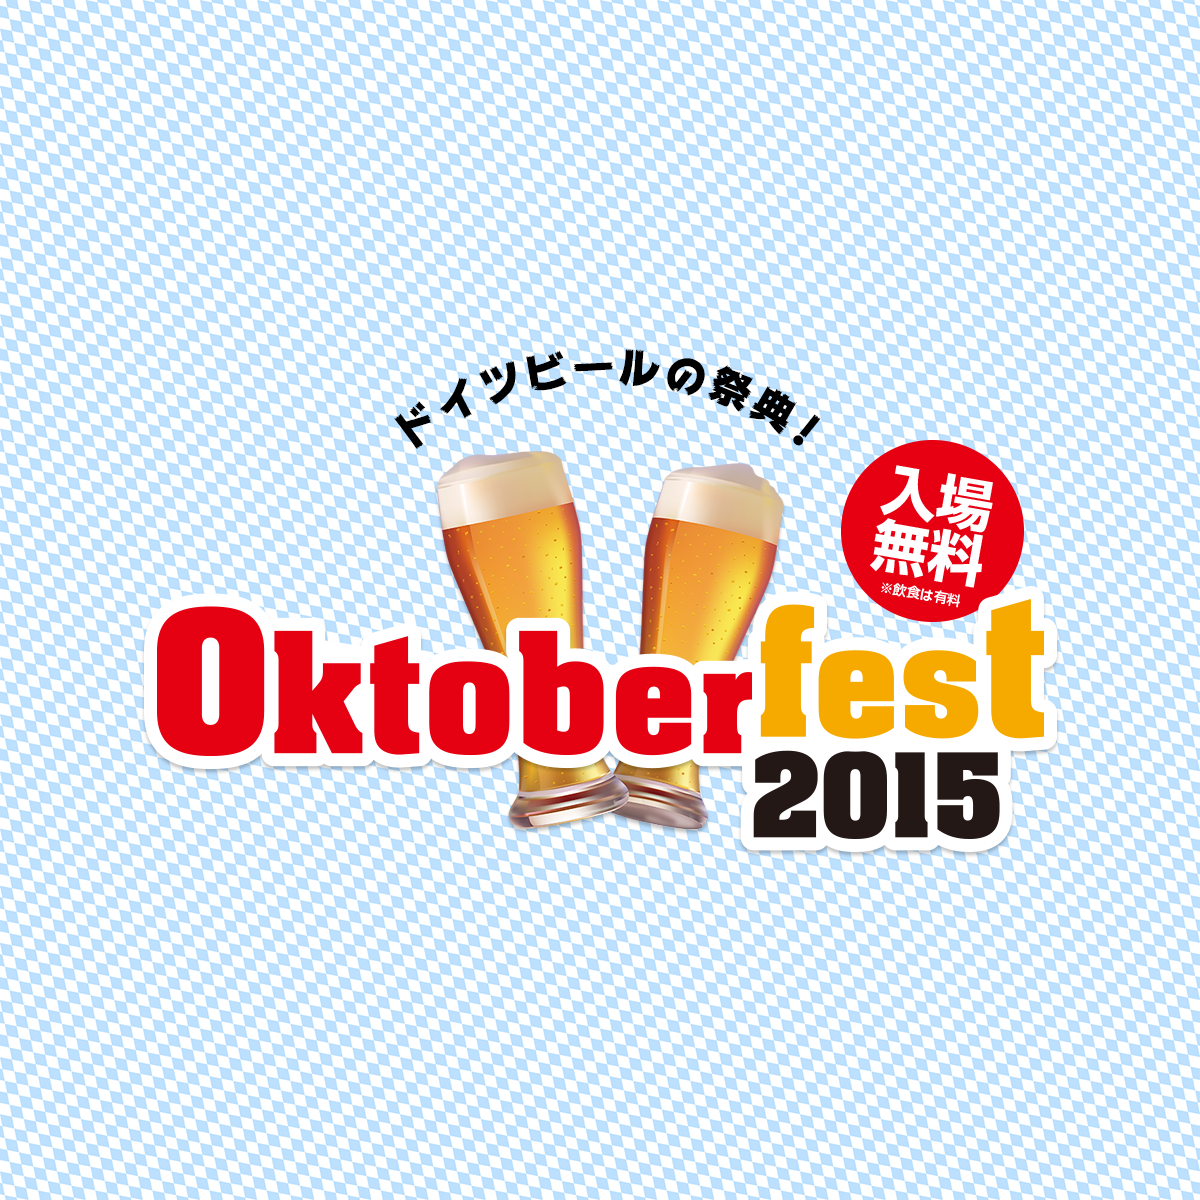 OKTOBERFEST 2015 日本公式サイト